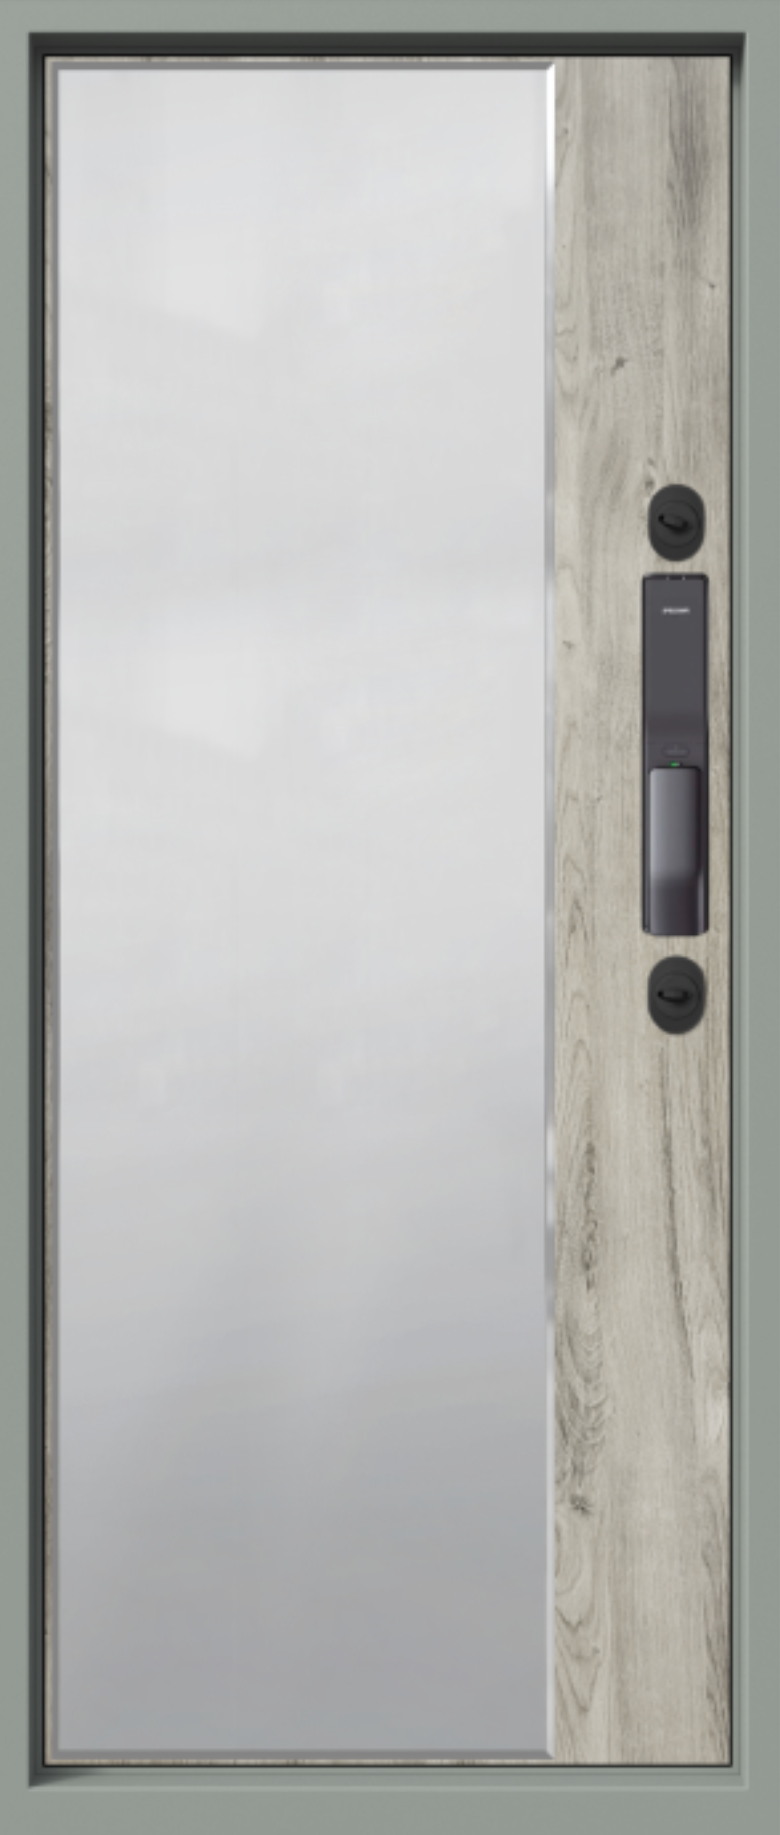 металлические двери входная дверь electra biometric